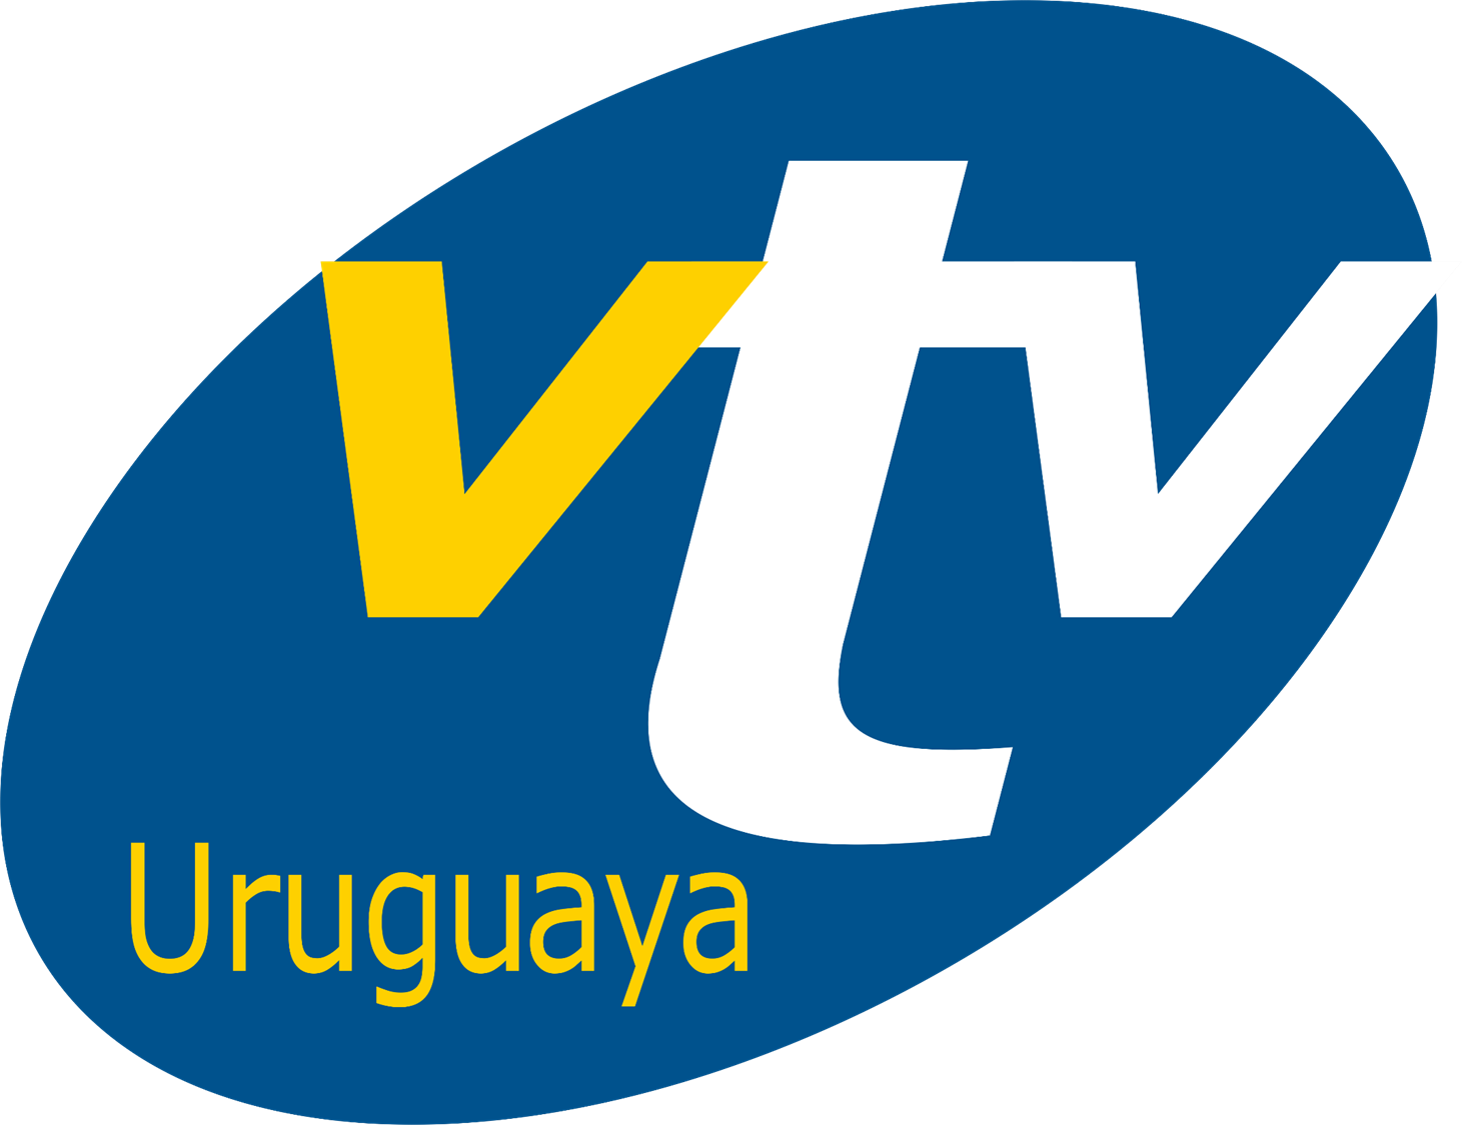  VTV canal Uruguay 